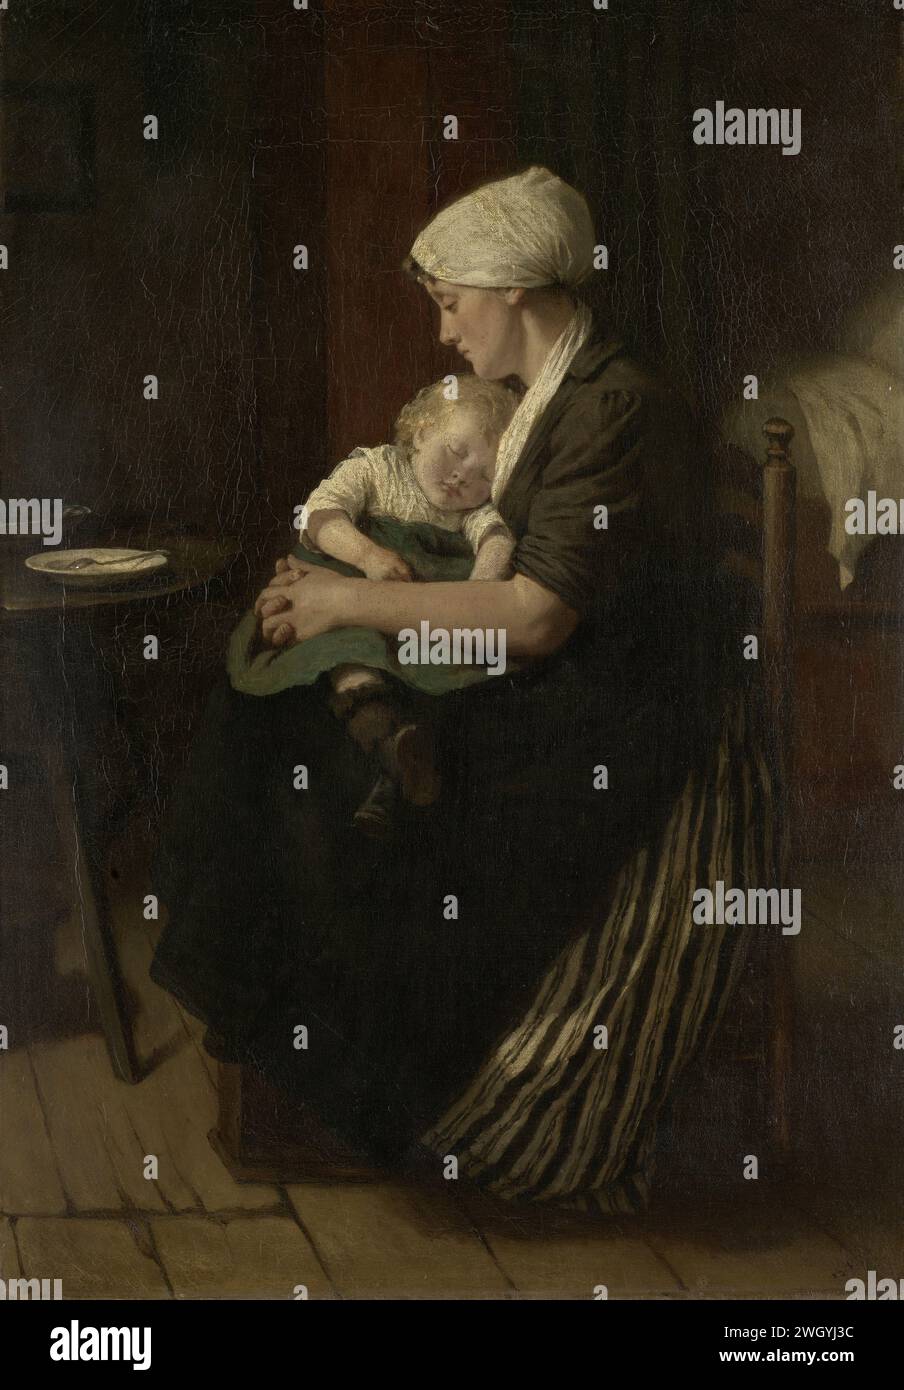 In den Schlaf eingelullt, David Adolph Constant Artz, 1871 Gemälde Suffed Sleep. Sitzende Mutter mit einem schlafenden Kind auf dem Schoß. Leinwand. Ölfarbe (Farbe) Mutter und Baby oder Kleinkind. Ein schlafendes Kind beobachten Stockfoto